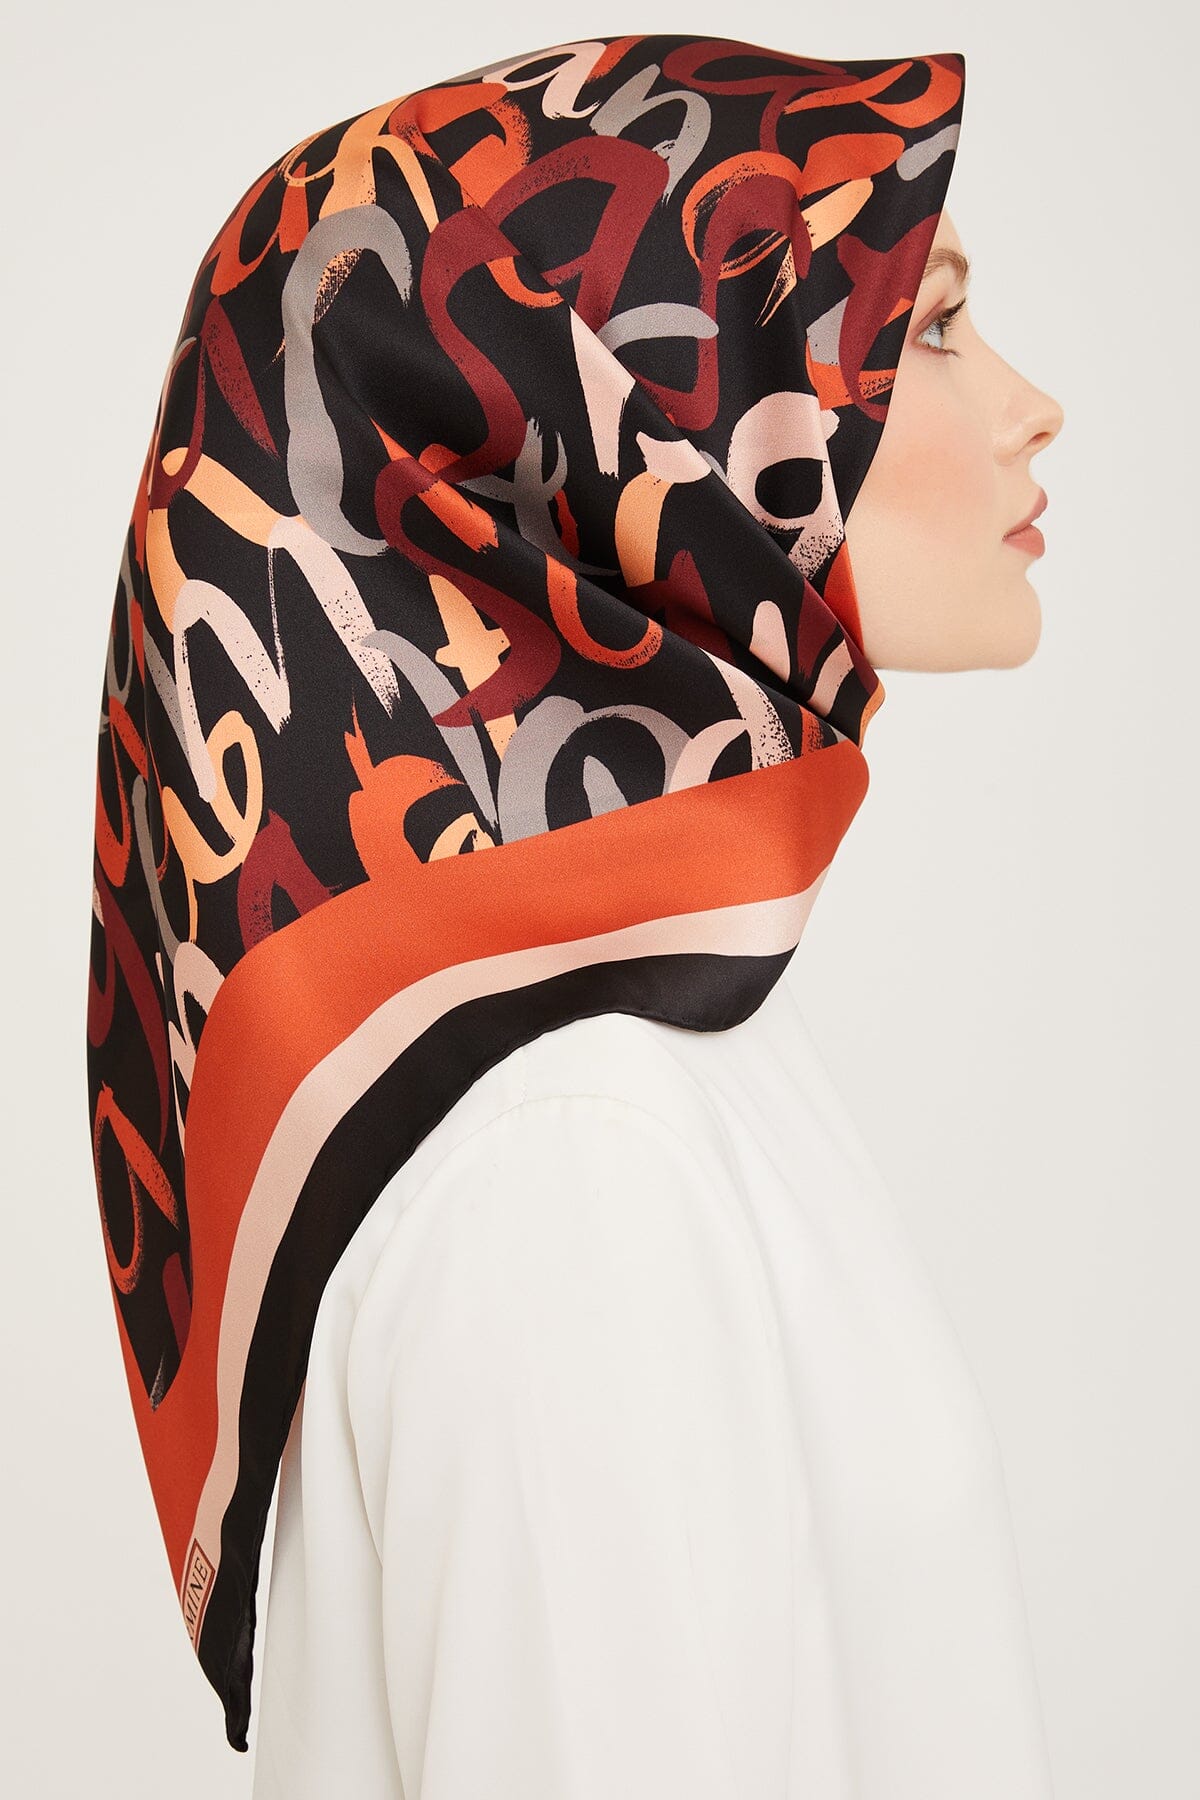 Armine Nudle Designer Silk Scarf #33 Silk Hijabs,Armine Armine 